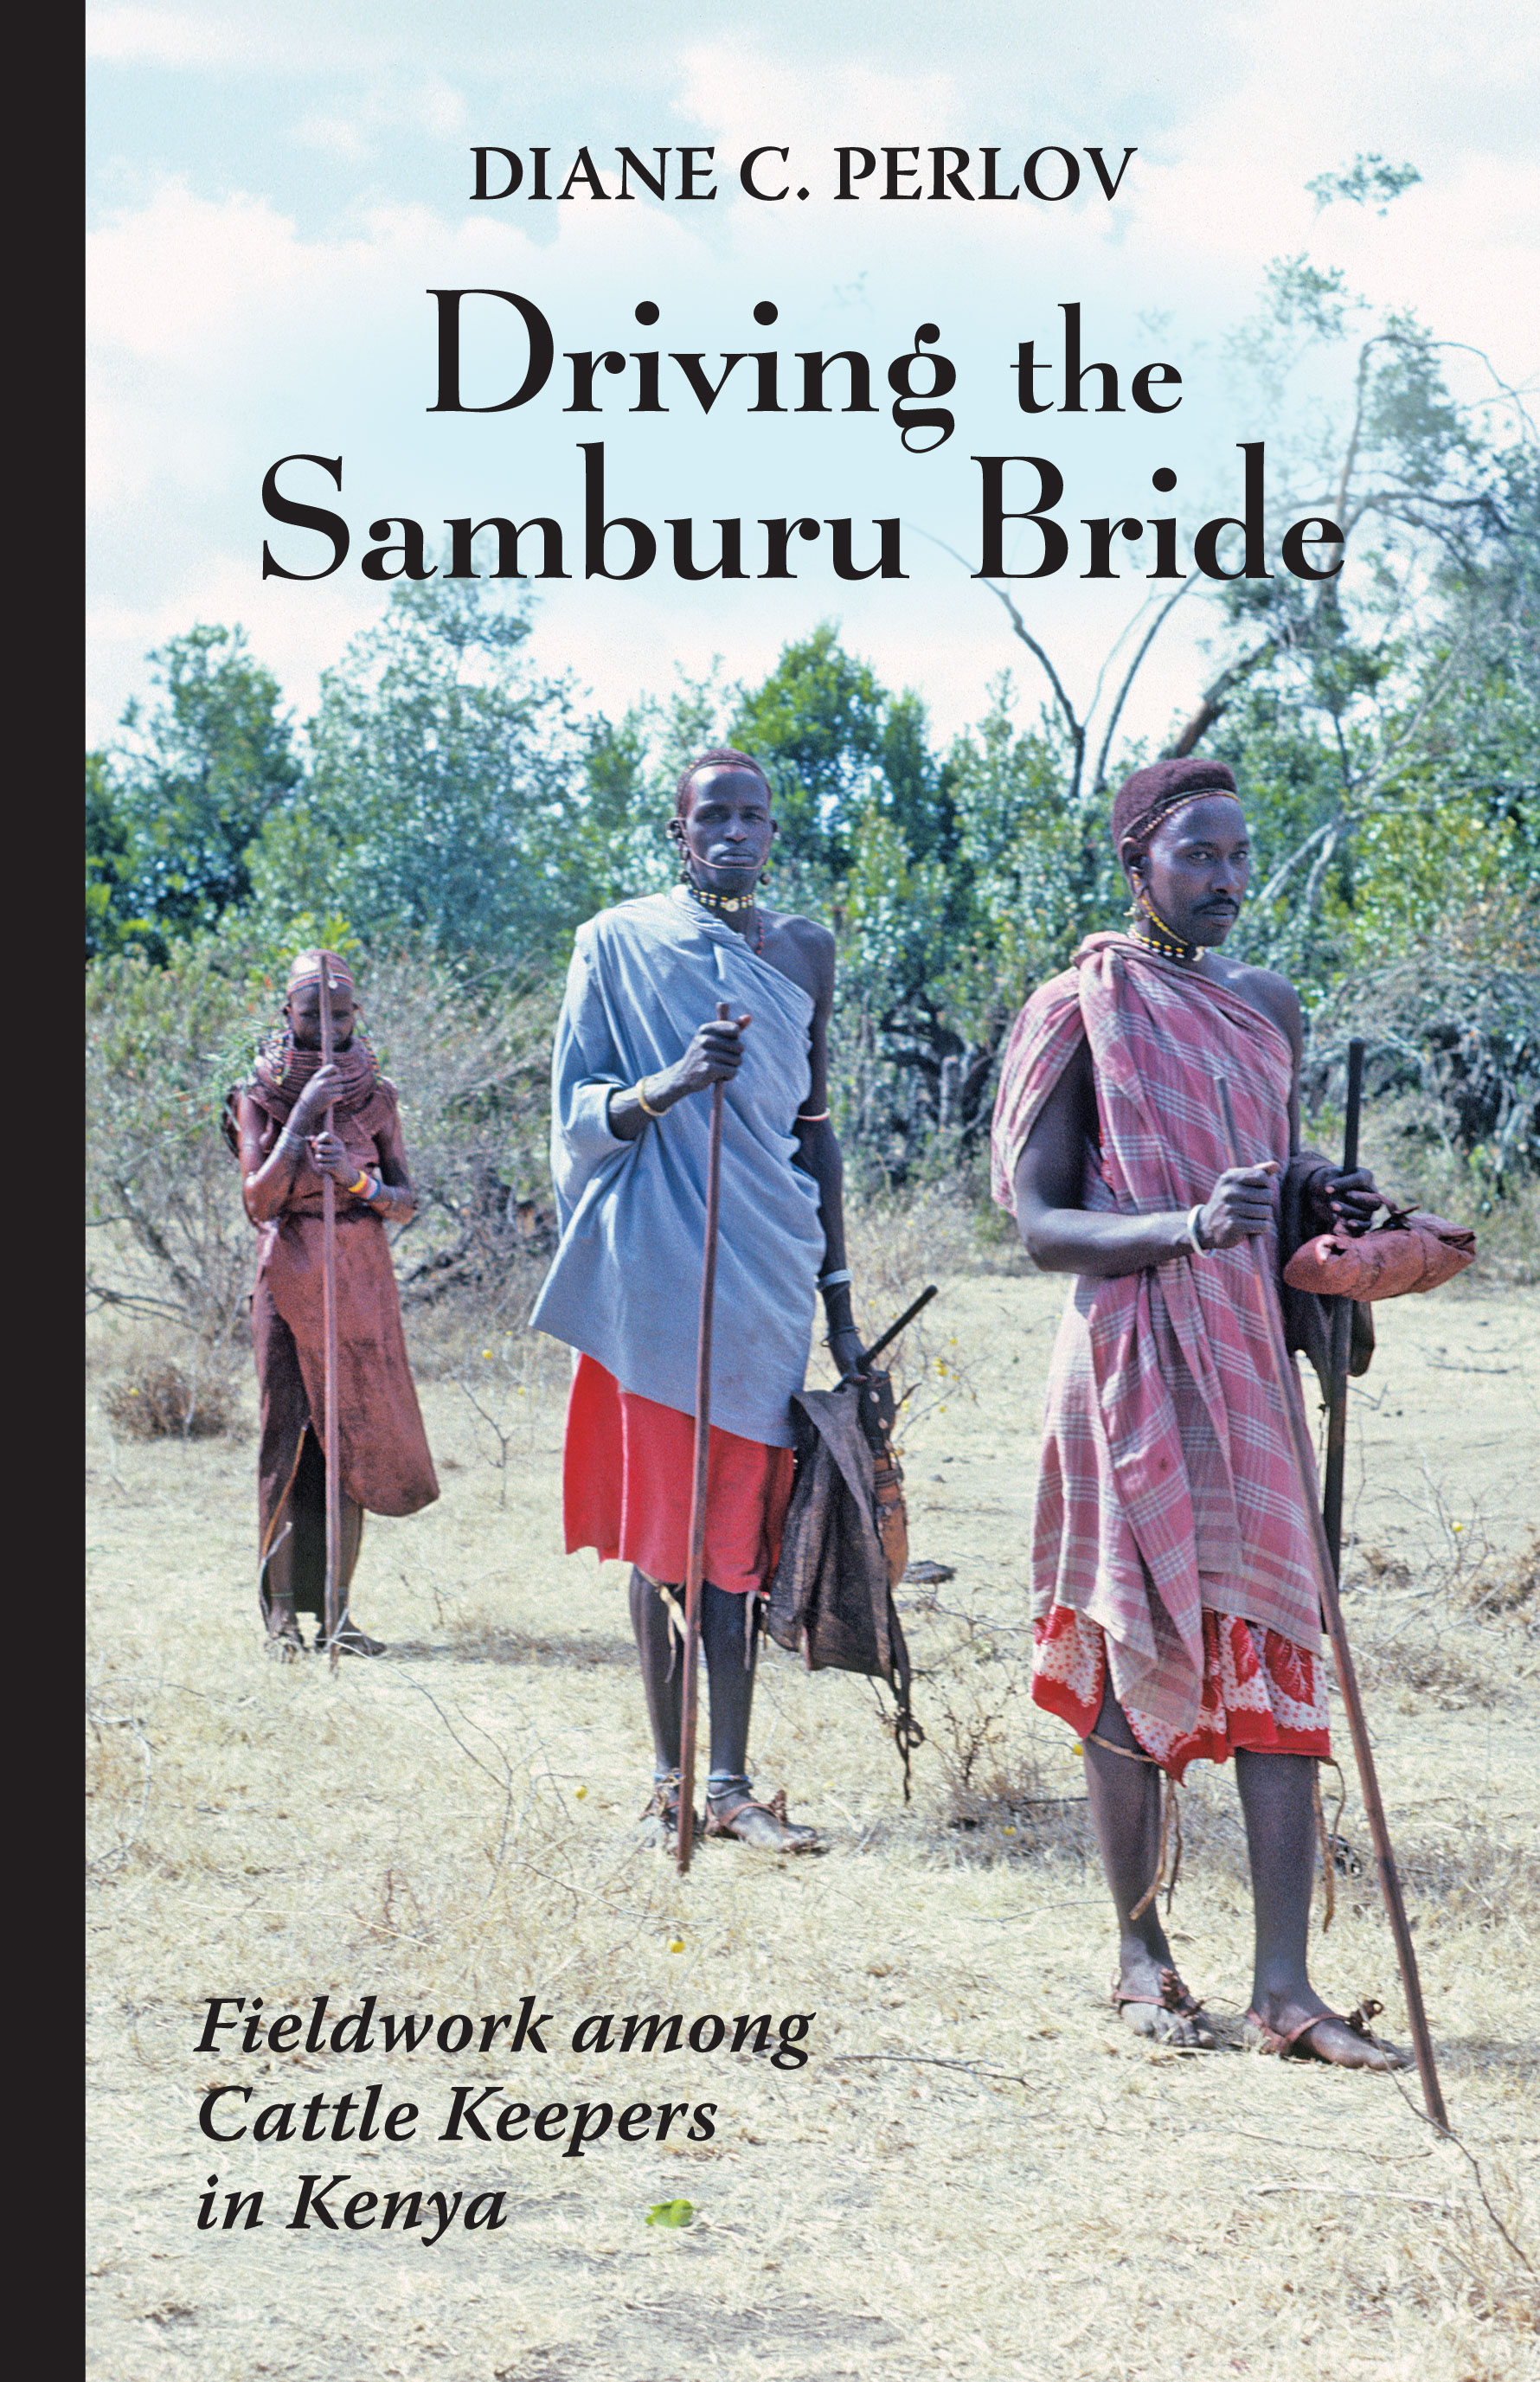 Driving the Samburu Bride: Fieldwork among Cattle Keepers in Kenya by Diane C. Perlov